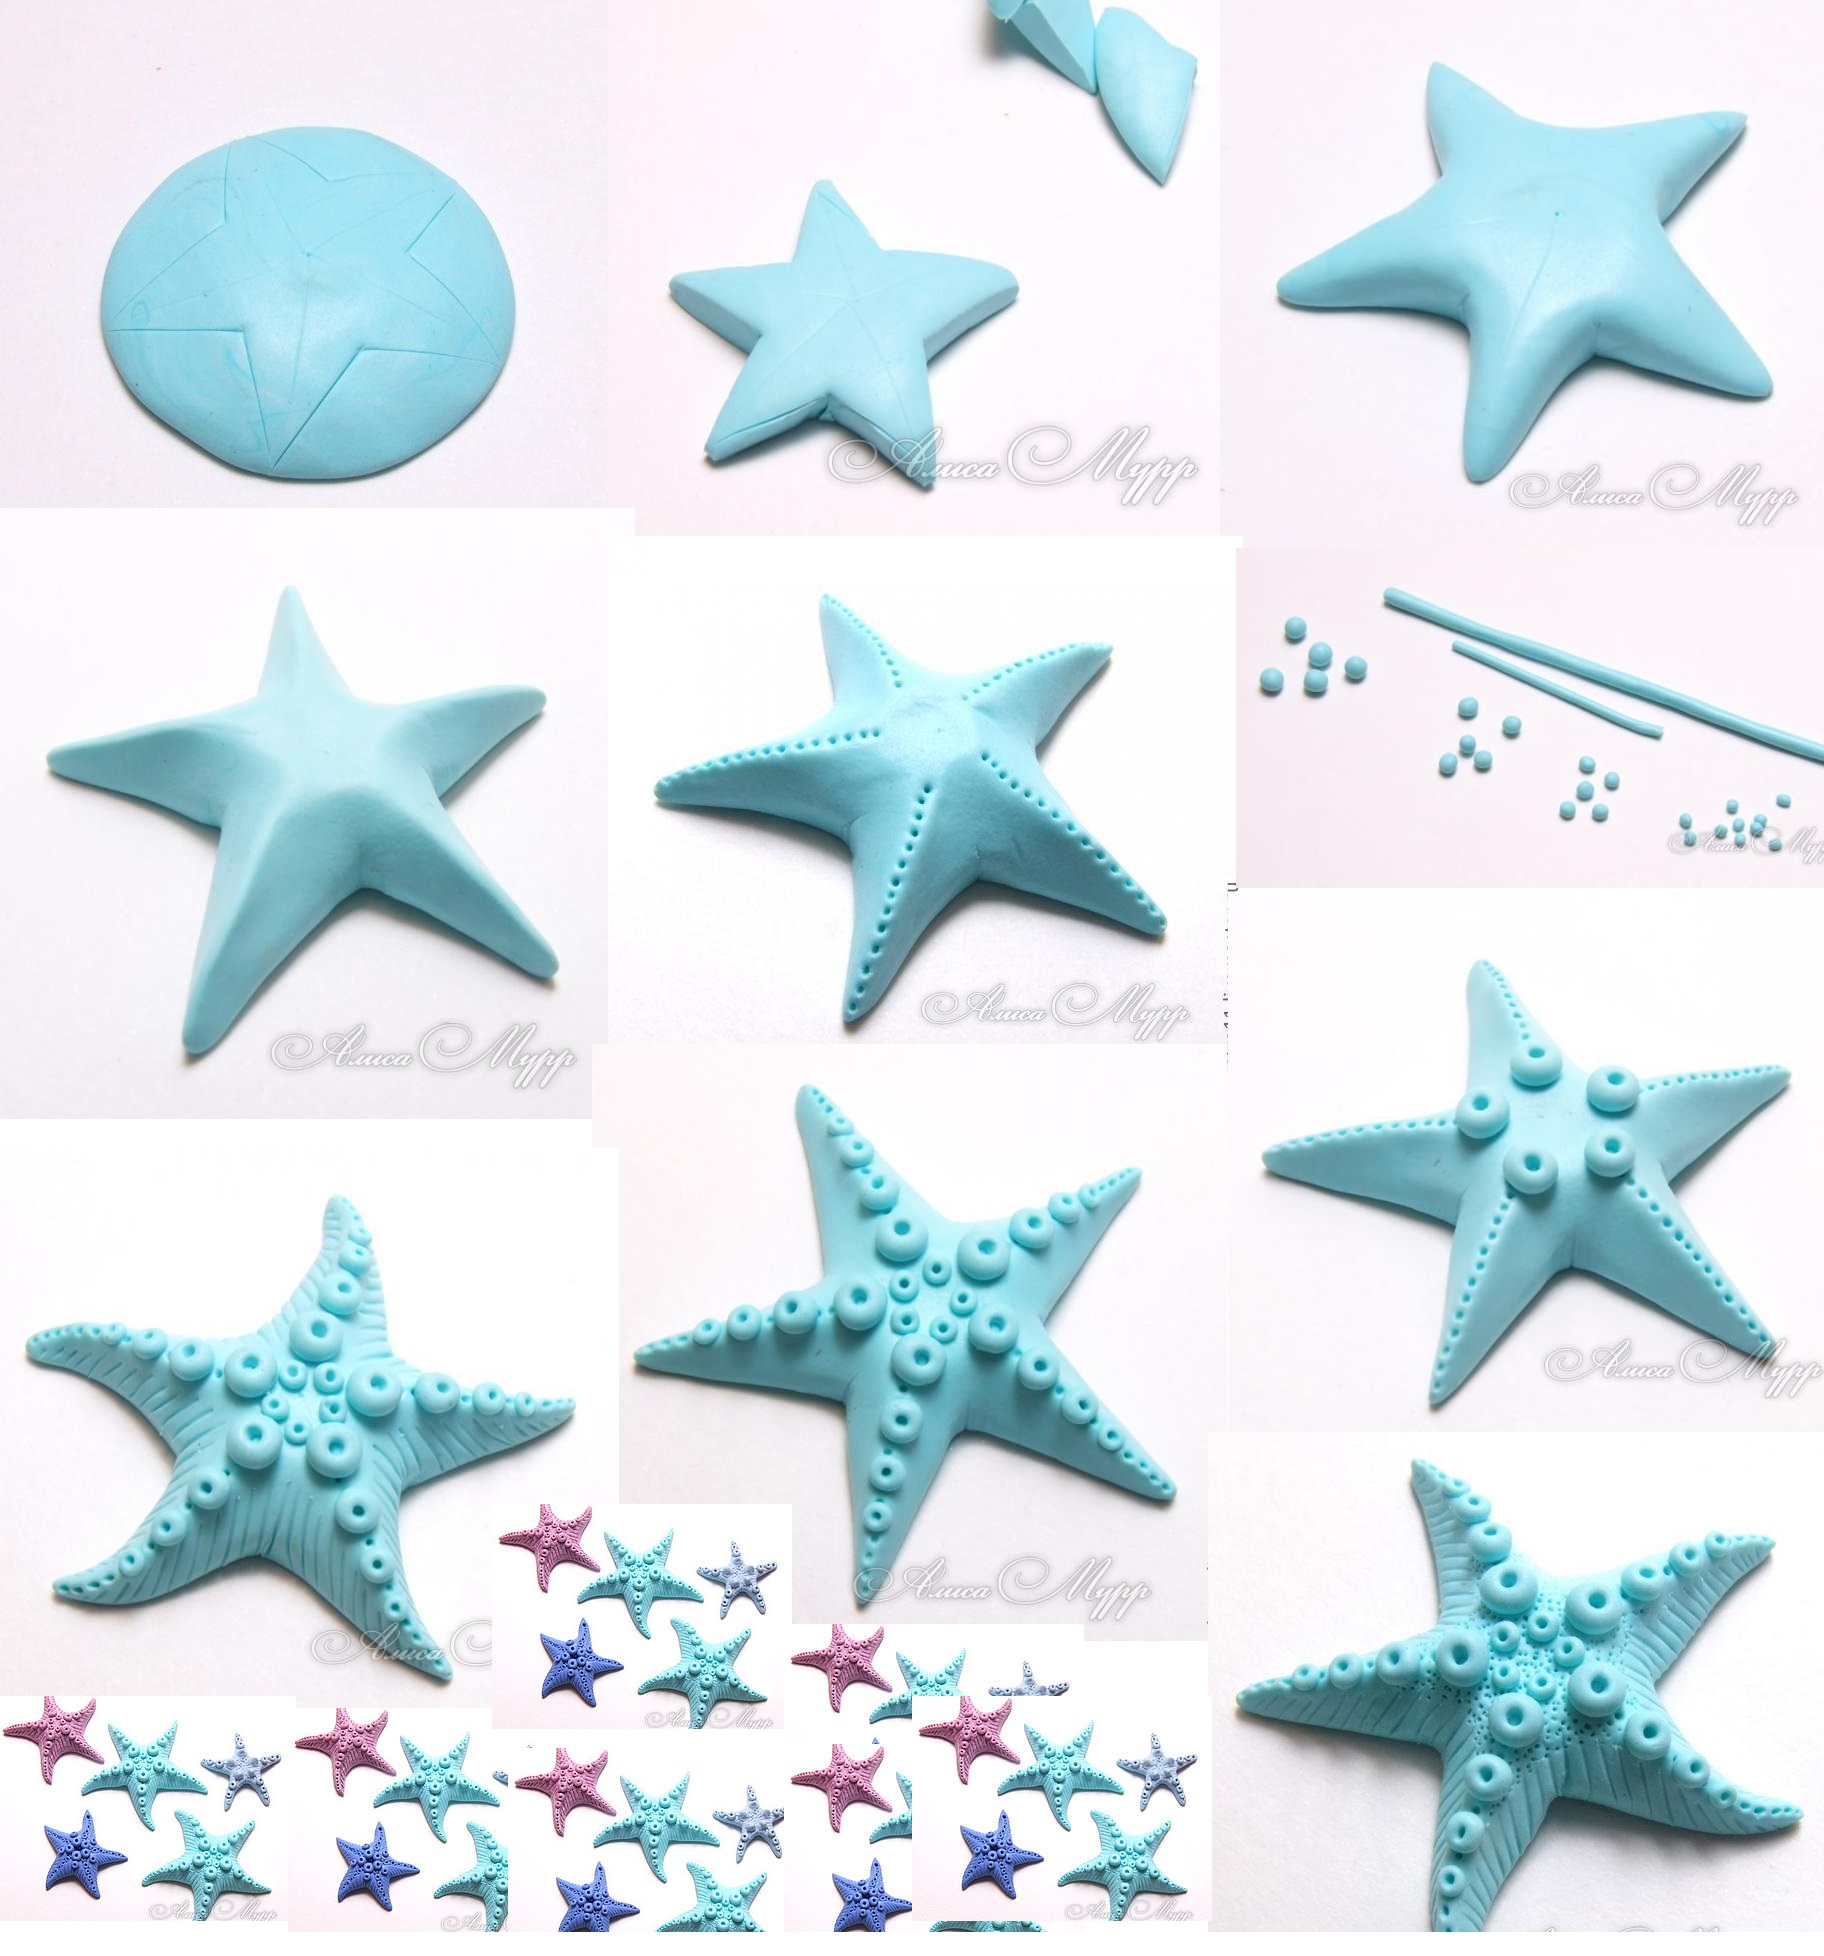 Polymer clay sea stars tutorial - step by step